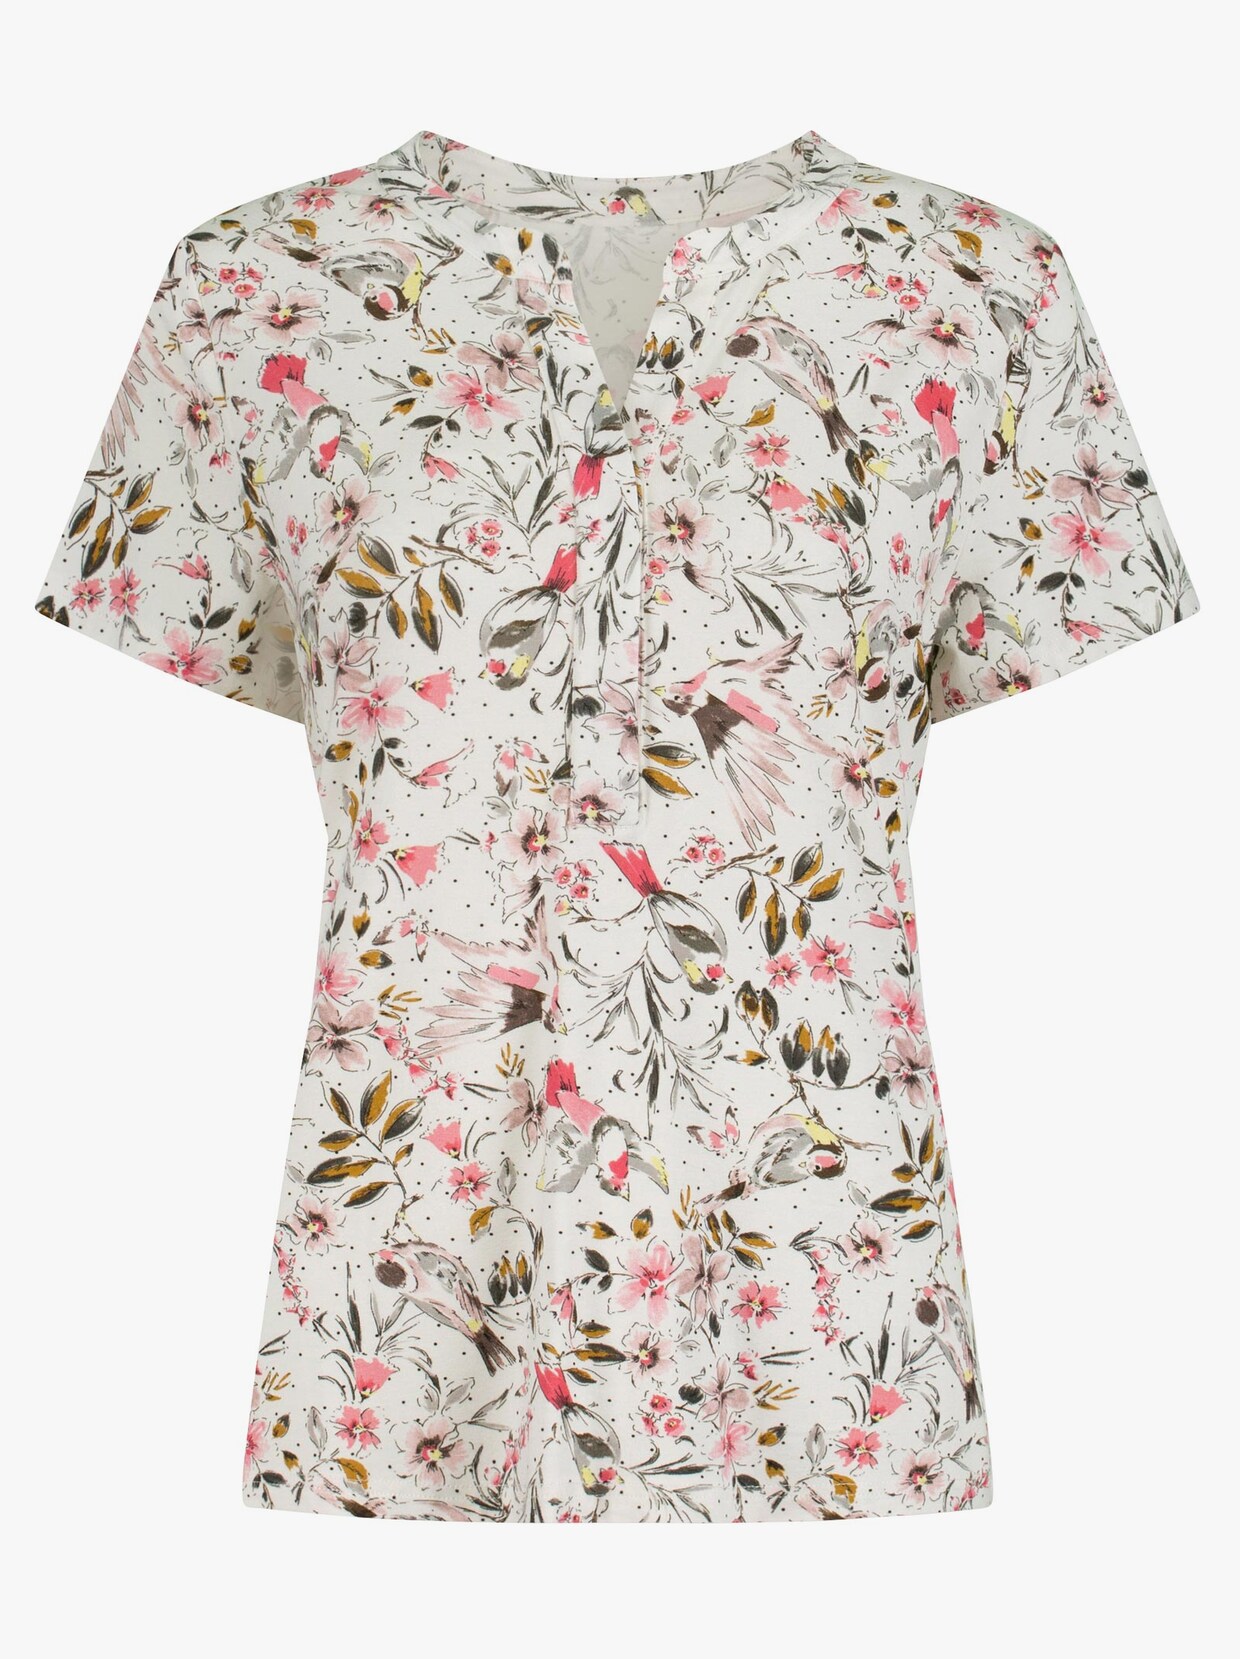 Tričko s krátkým rukávem - růžová-vzor